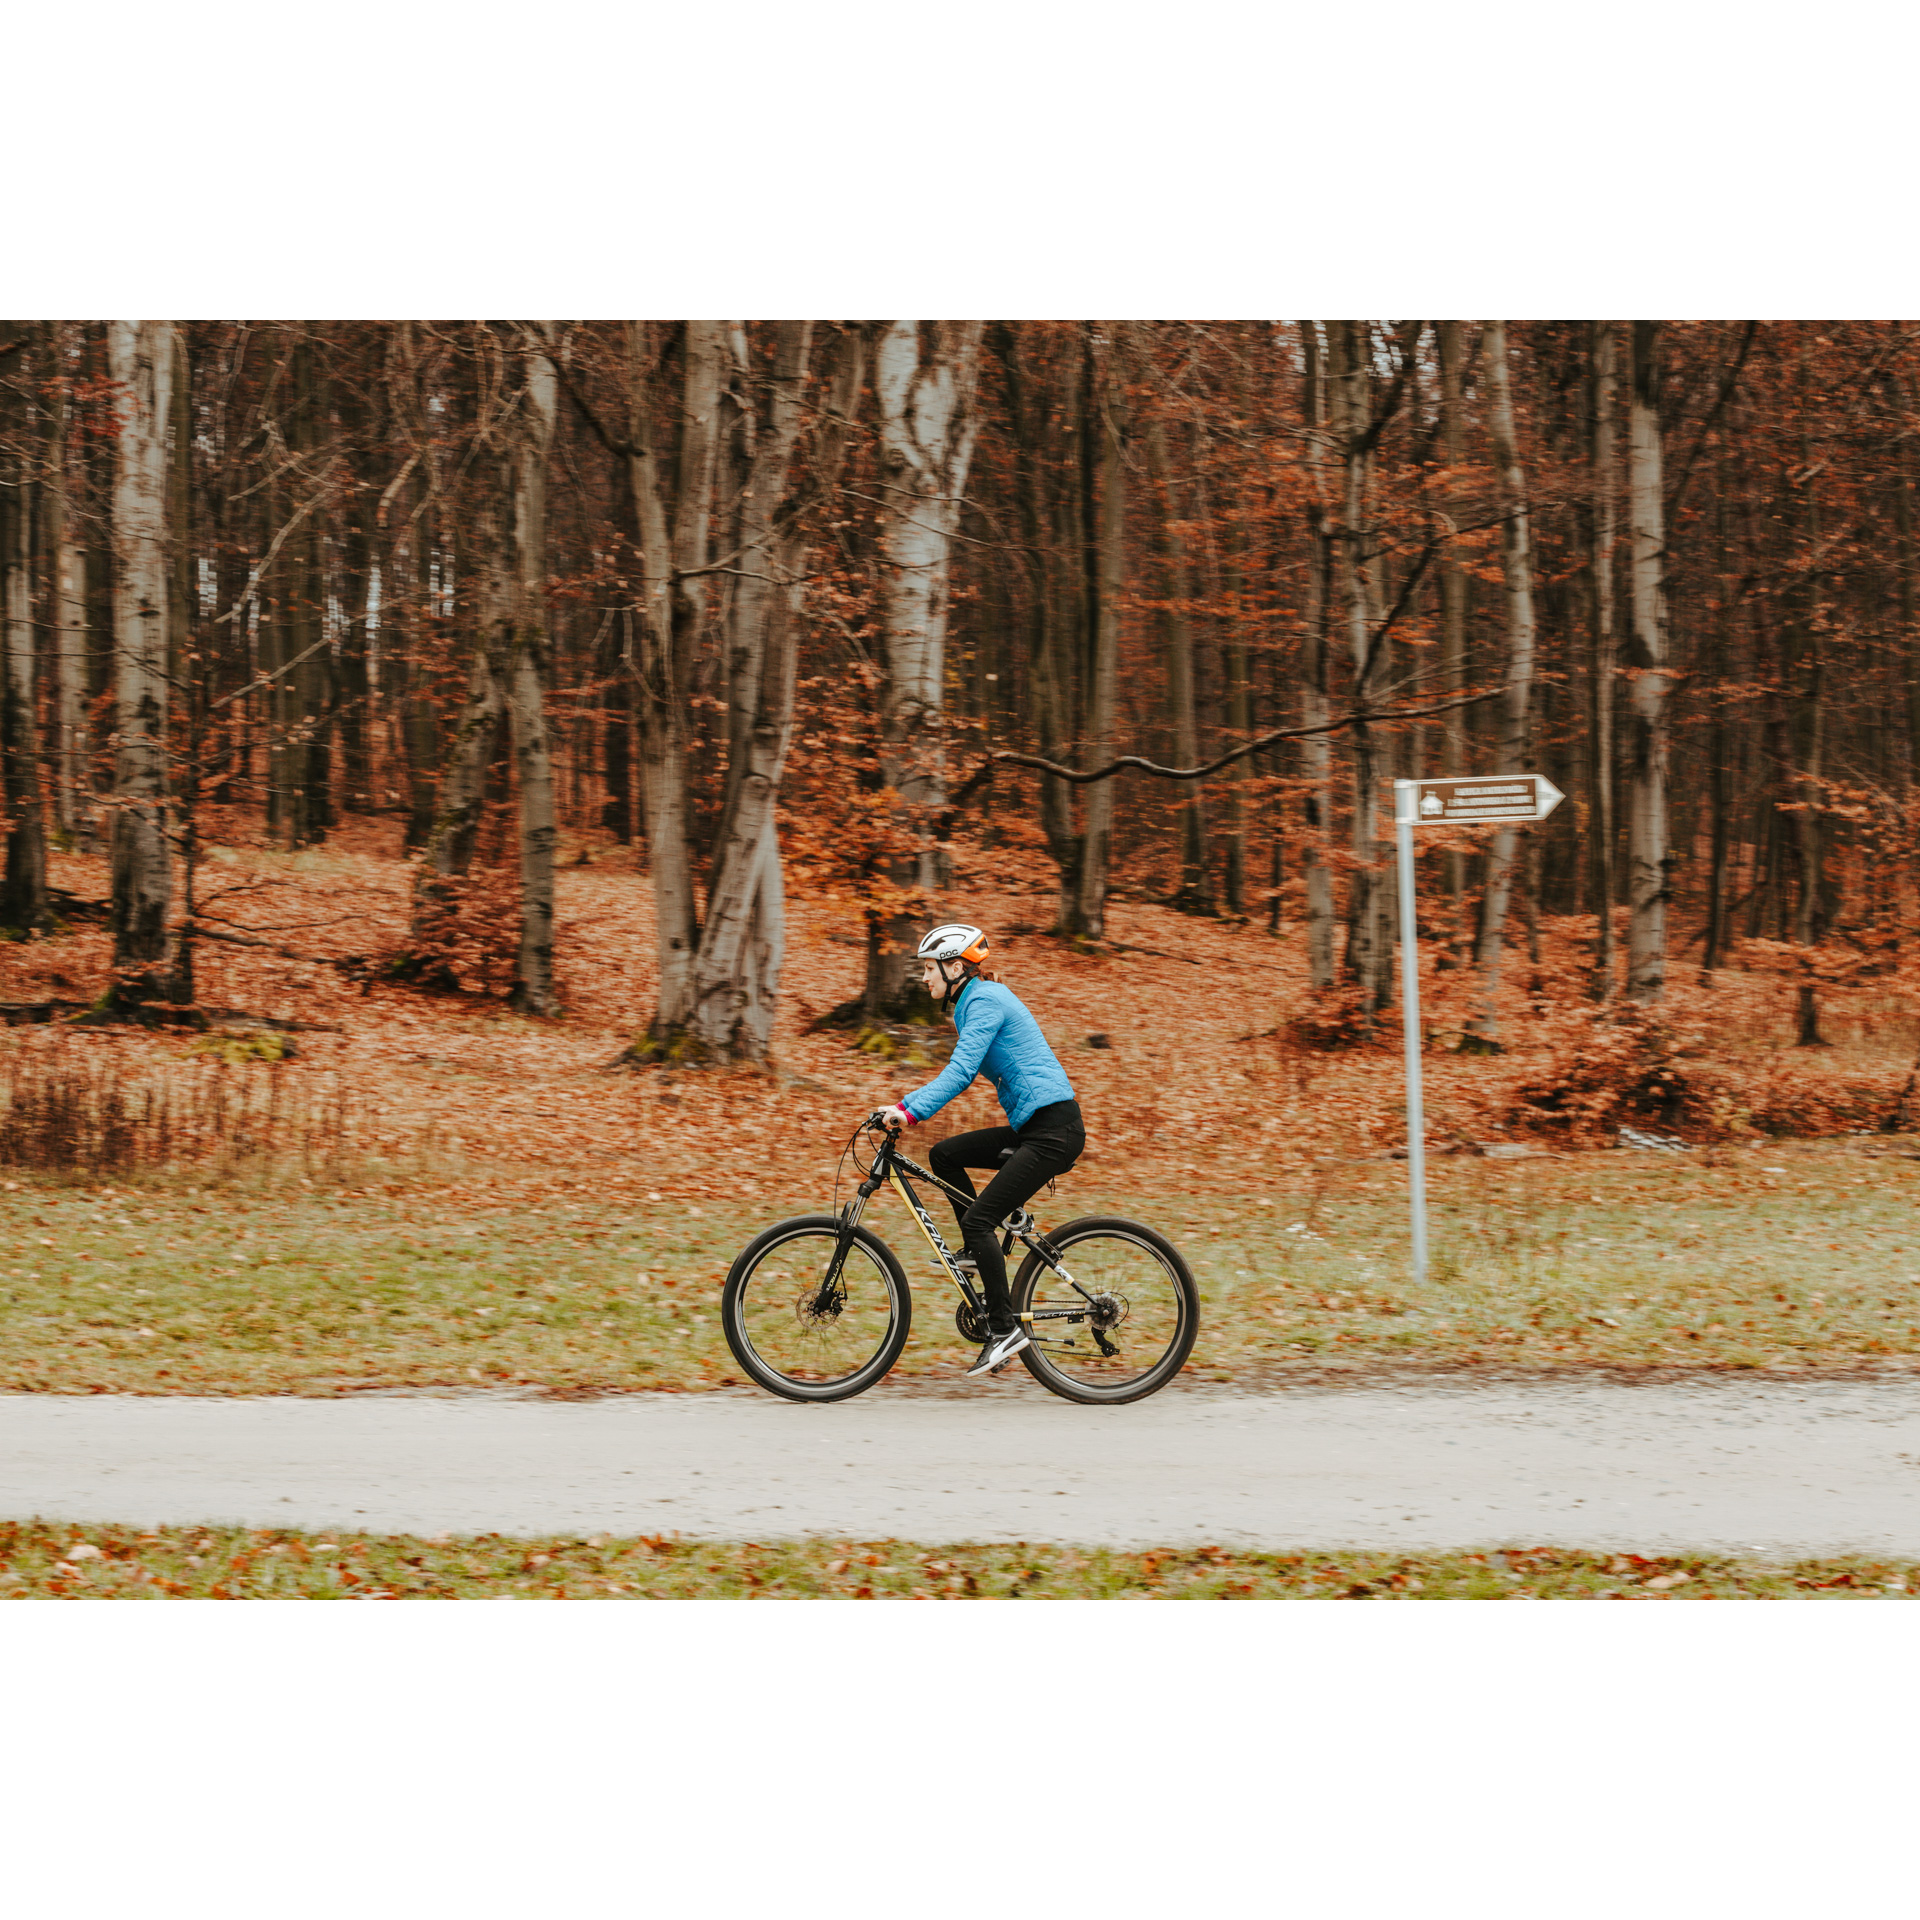 Rowerzystka w niebieskiej kurtce i kasku jadąca asfaltową drogą na rowerze, w tle pnie drzew i brązowa od opadniętych liści trawa